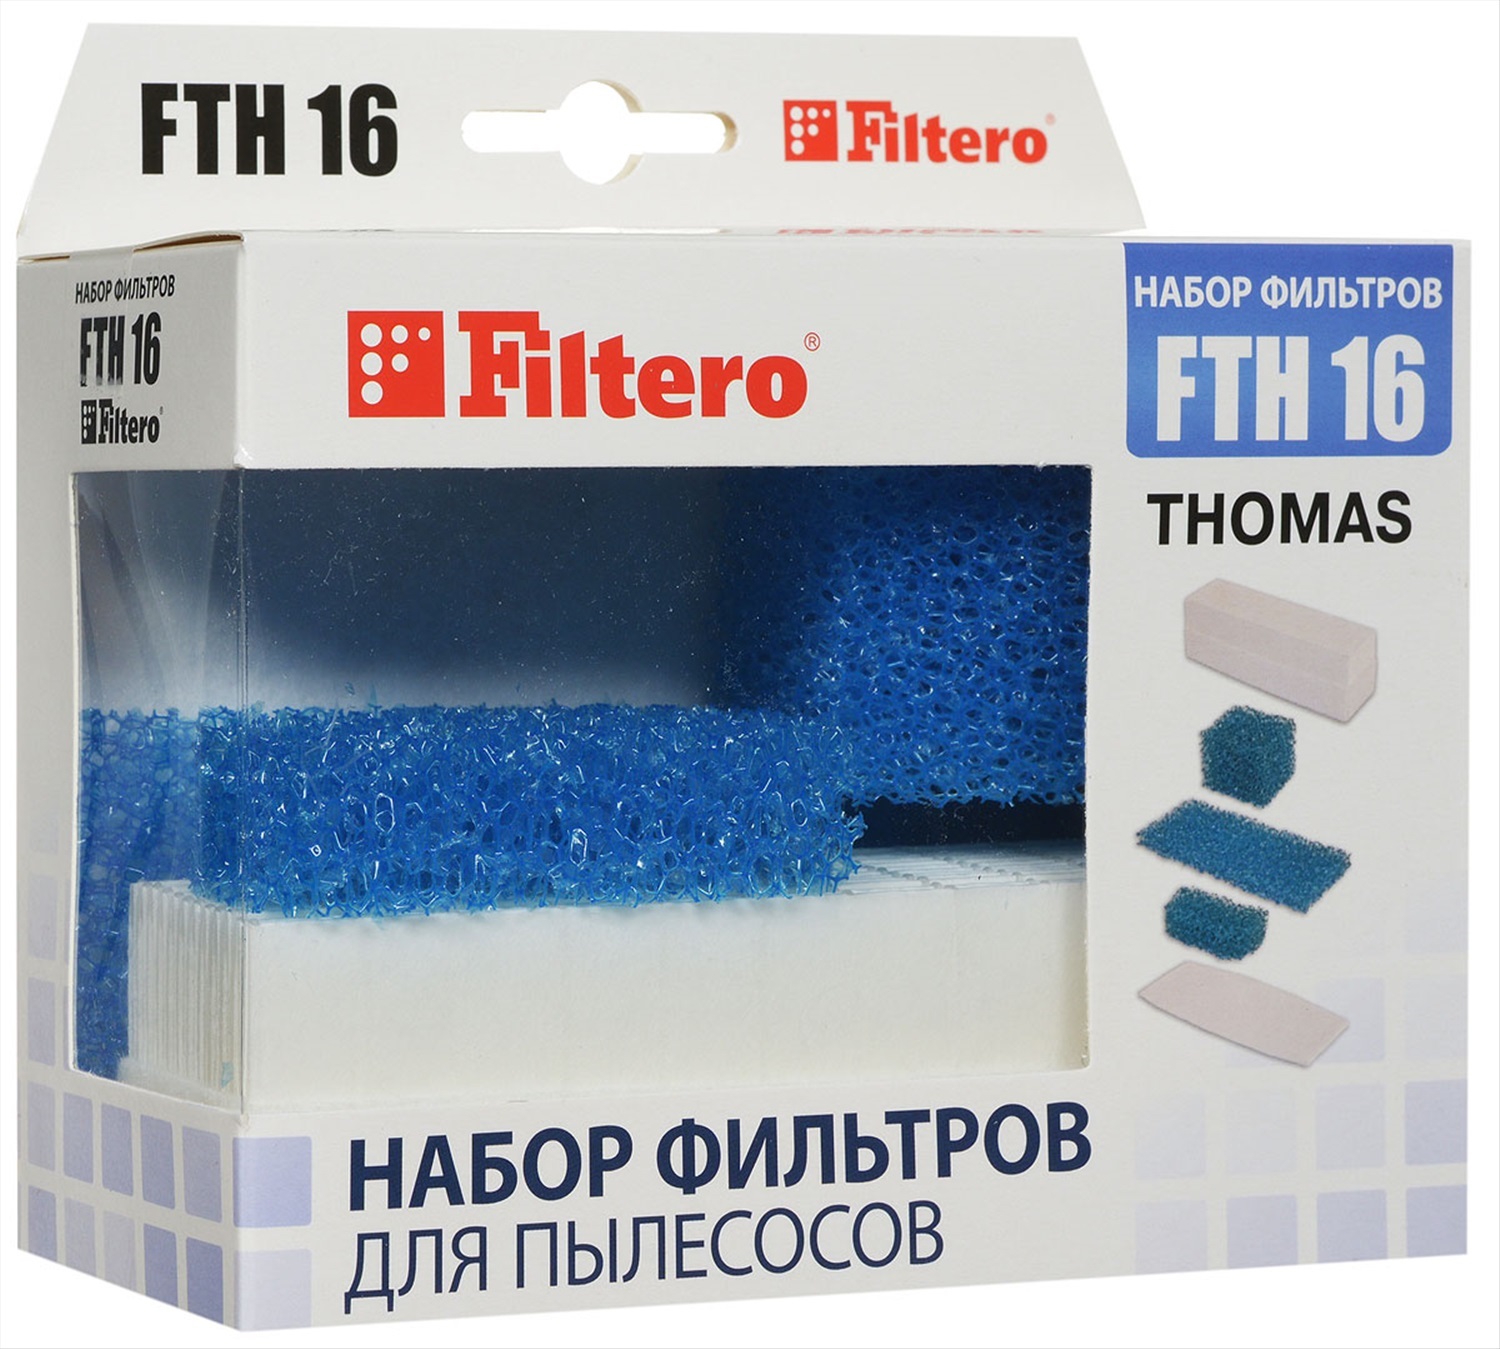 Thomas фильтры купить. Набор фильтров FTH 16 для пылесосов Thomas. Filtero набор фильтров FTH 16. Thomas FTH 16 Нера. Фильтр Filtero FTH 39 Sam.